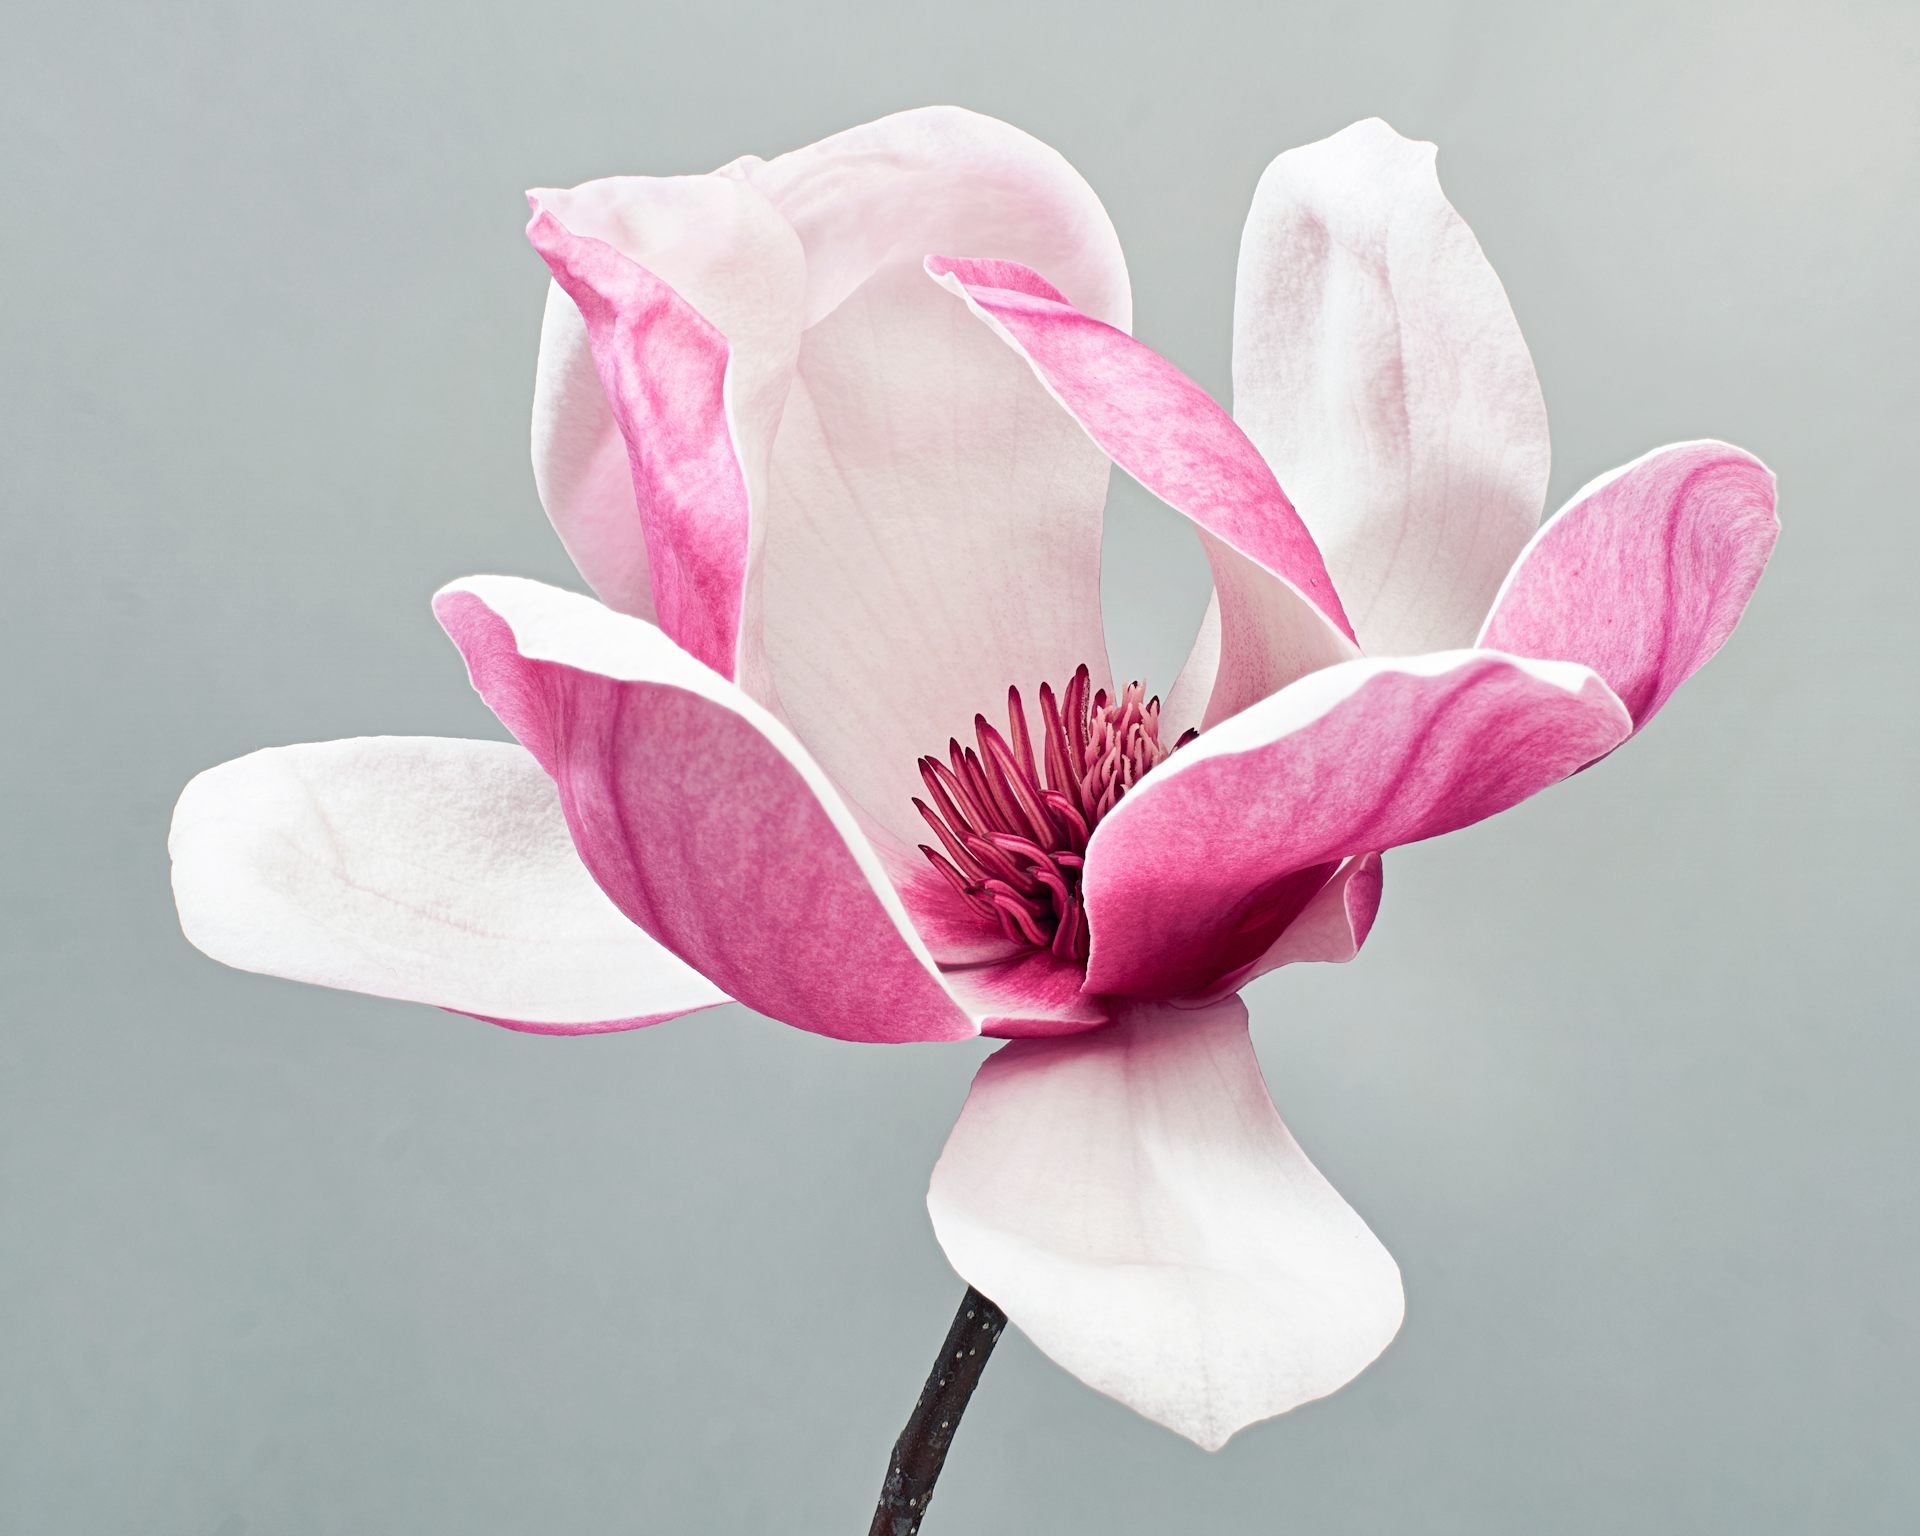 Polémica internacional entre biólogos: ¿las magnolias tienen que dejar de llamarse magnolias?